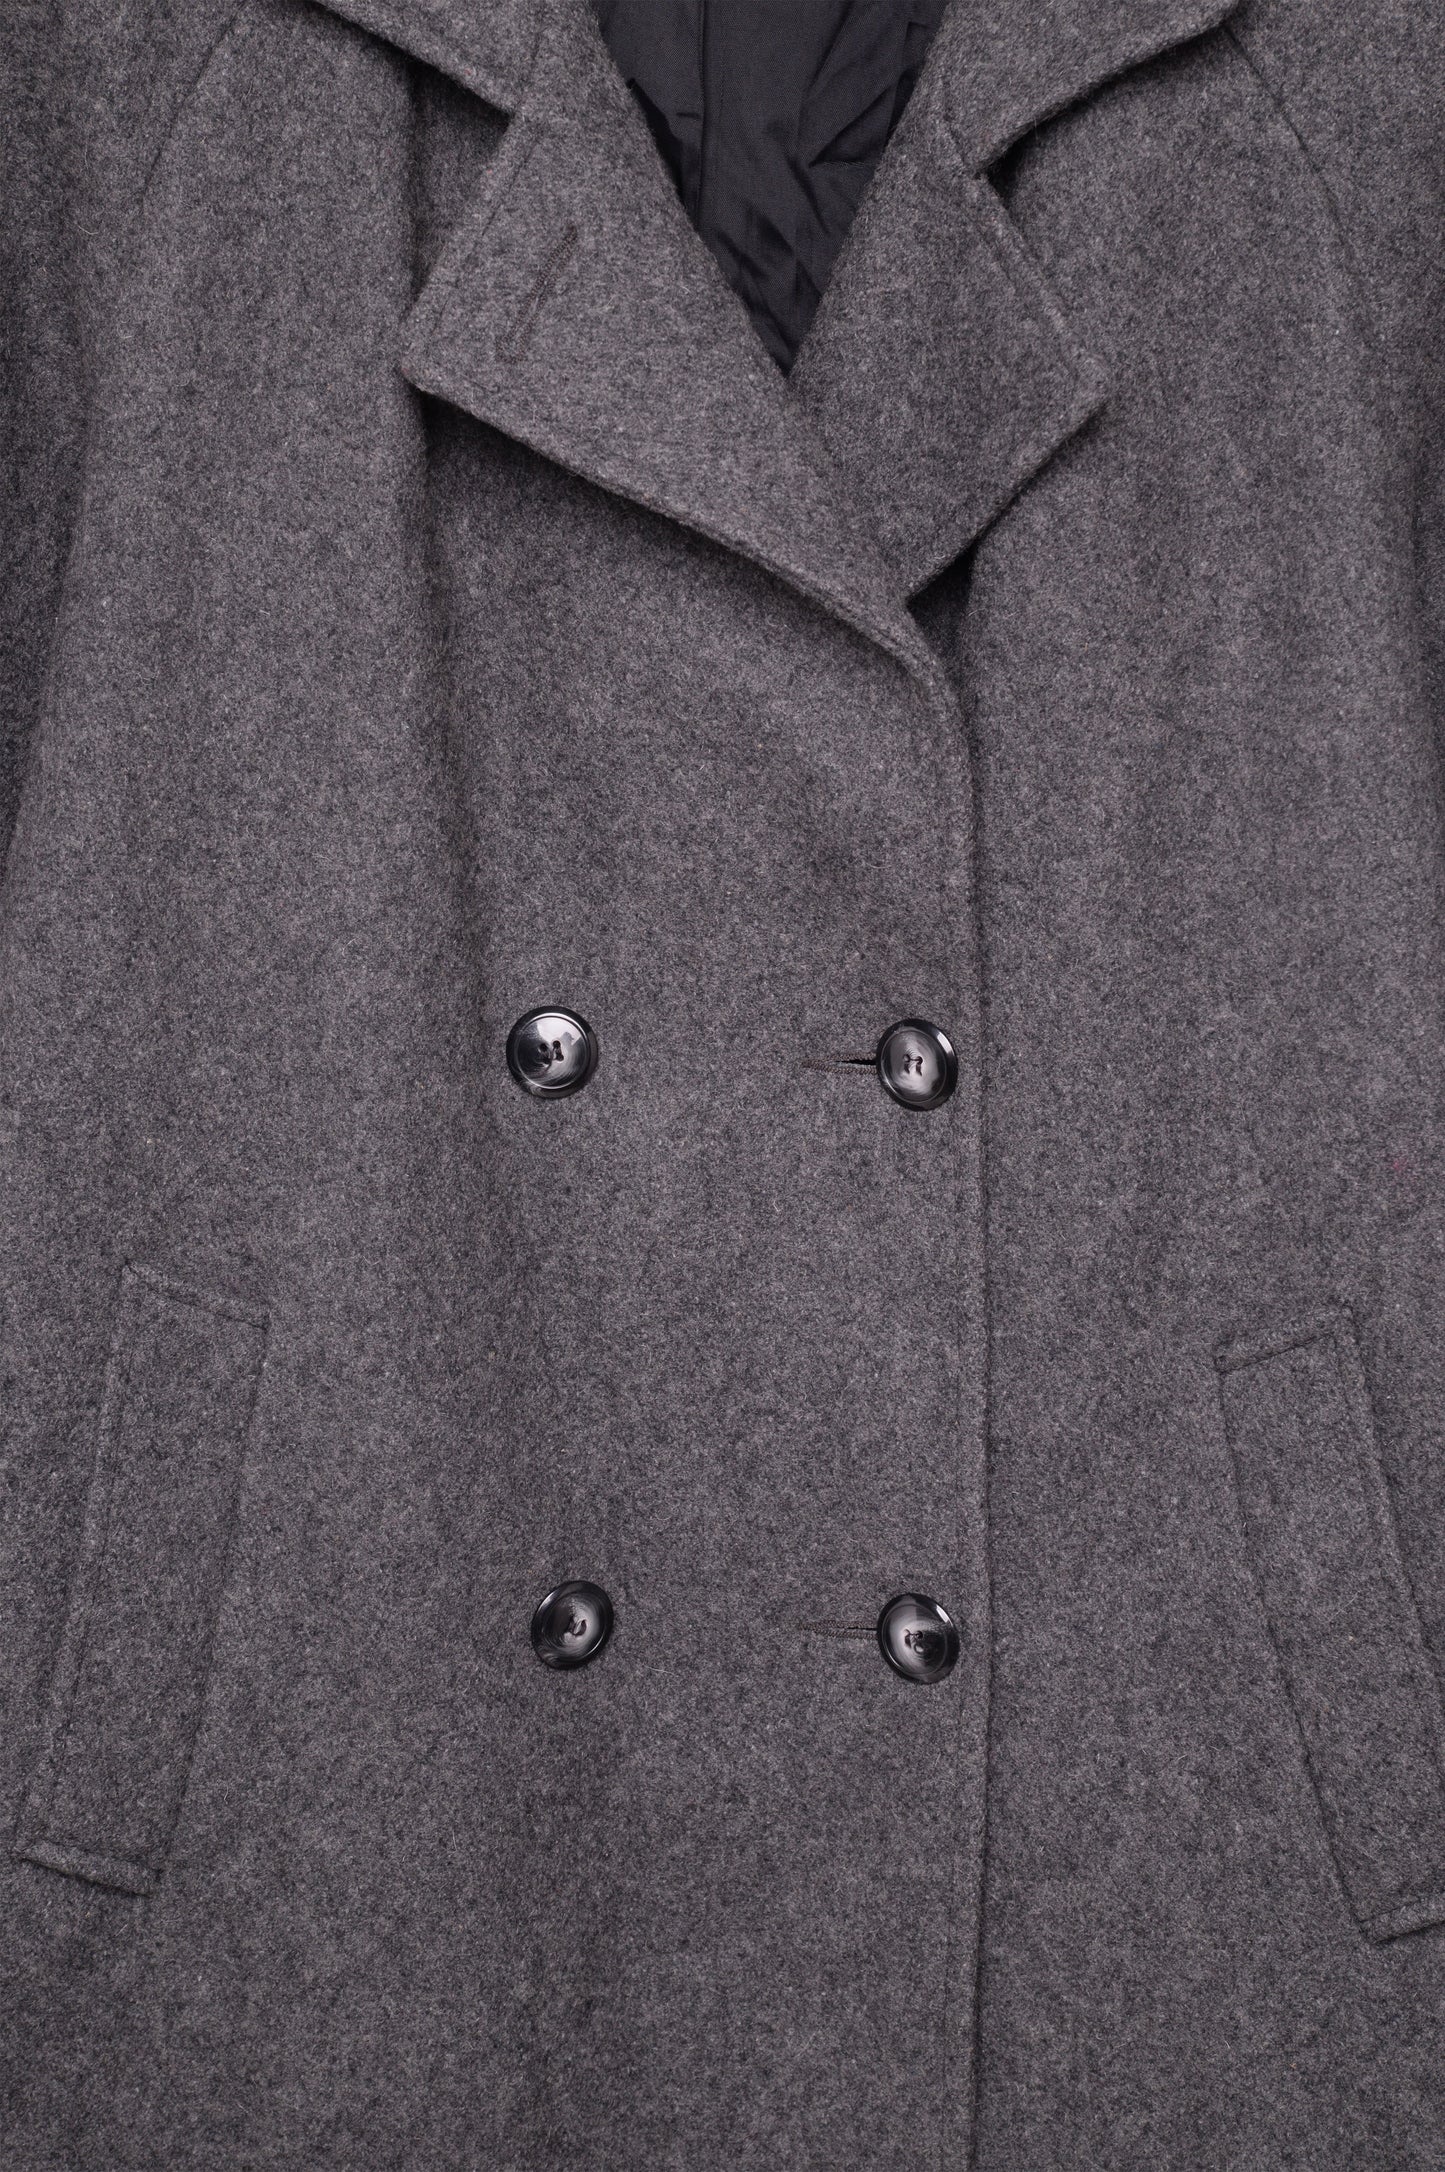 1980s Charcoal Wool Coat USA